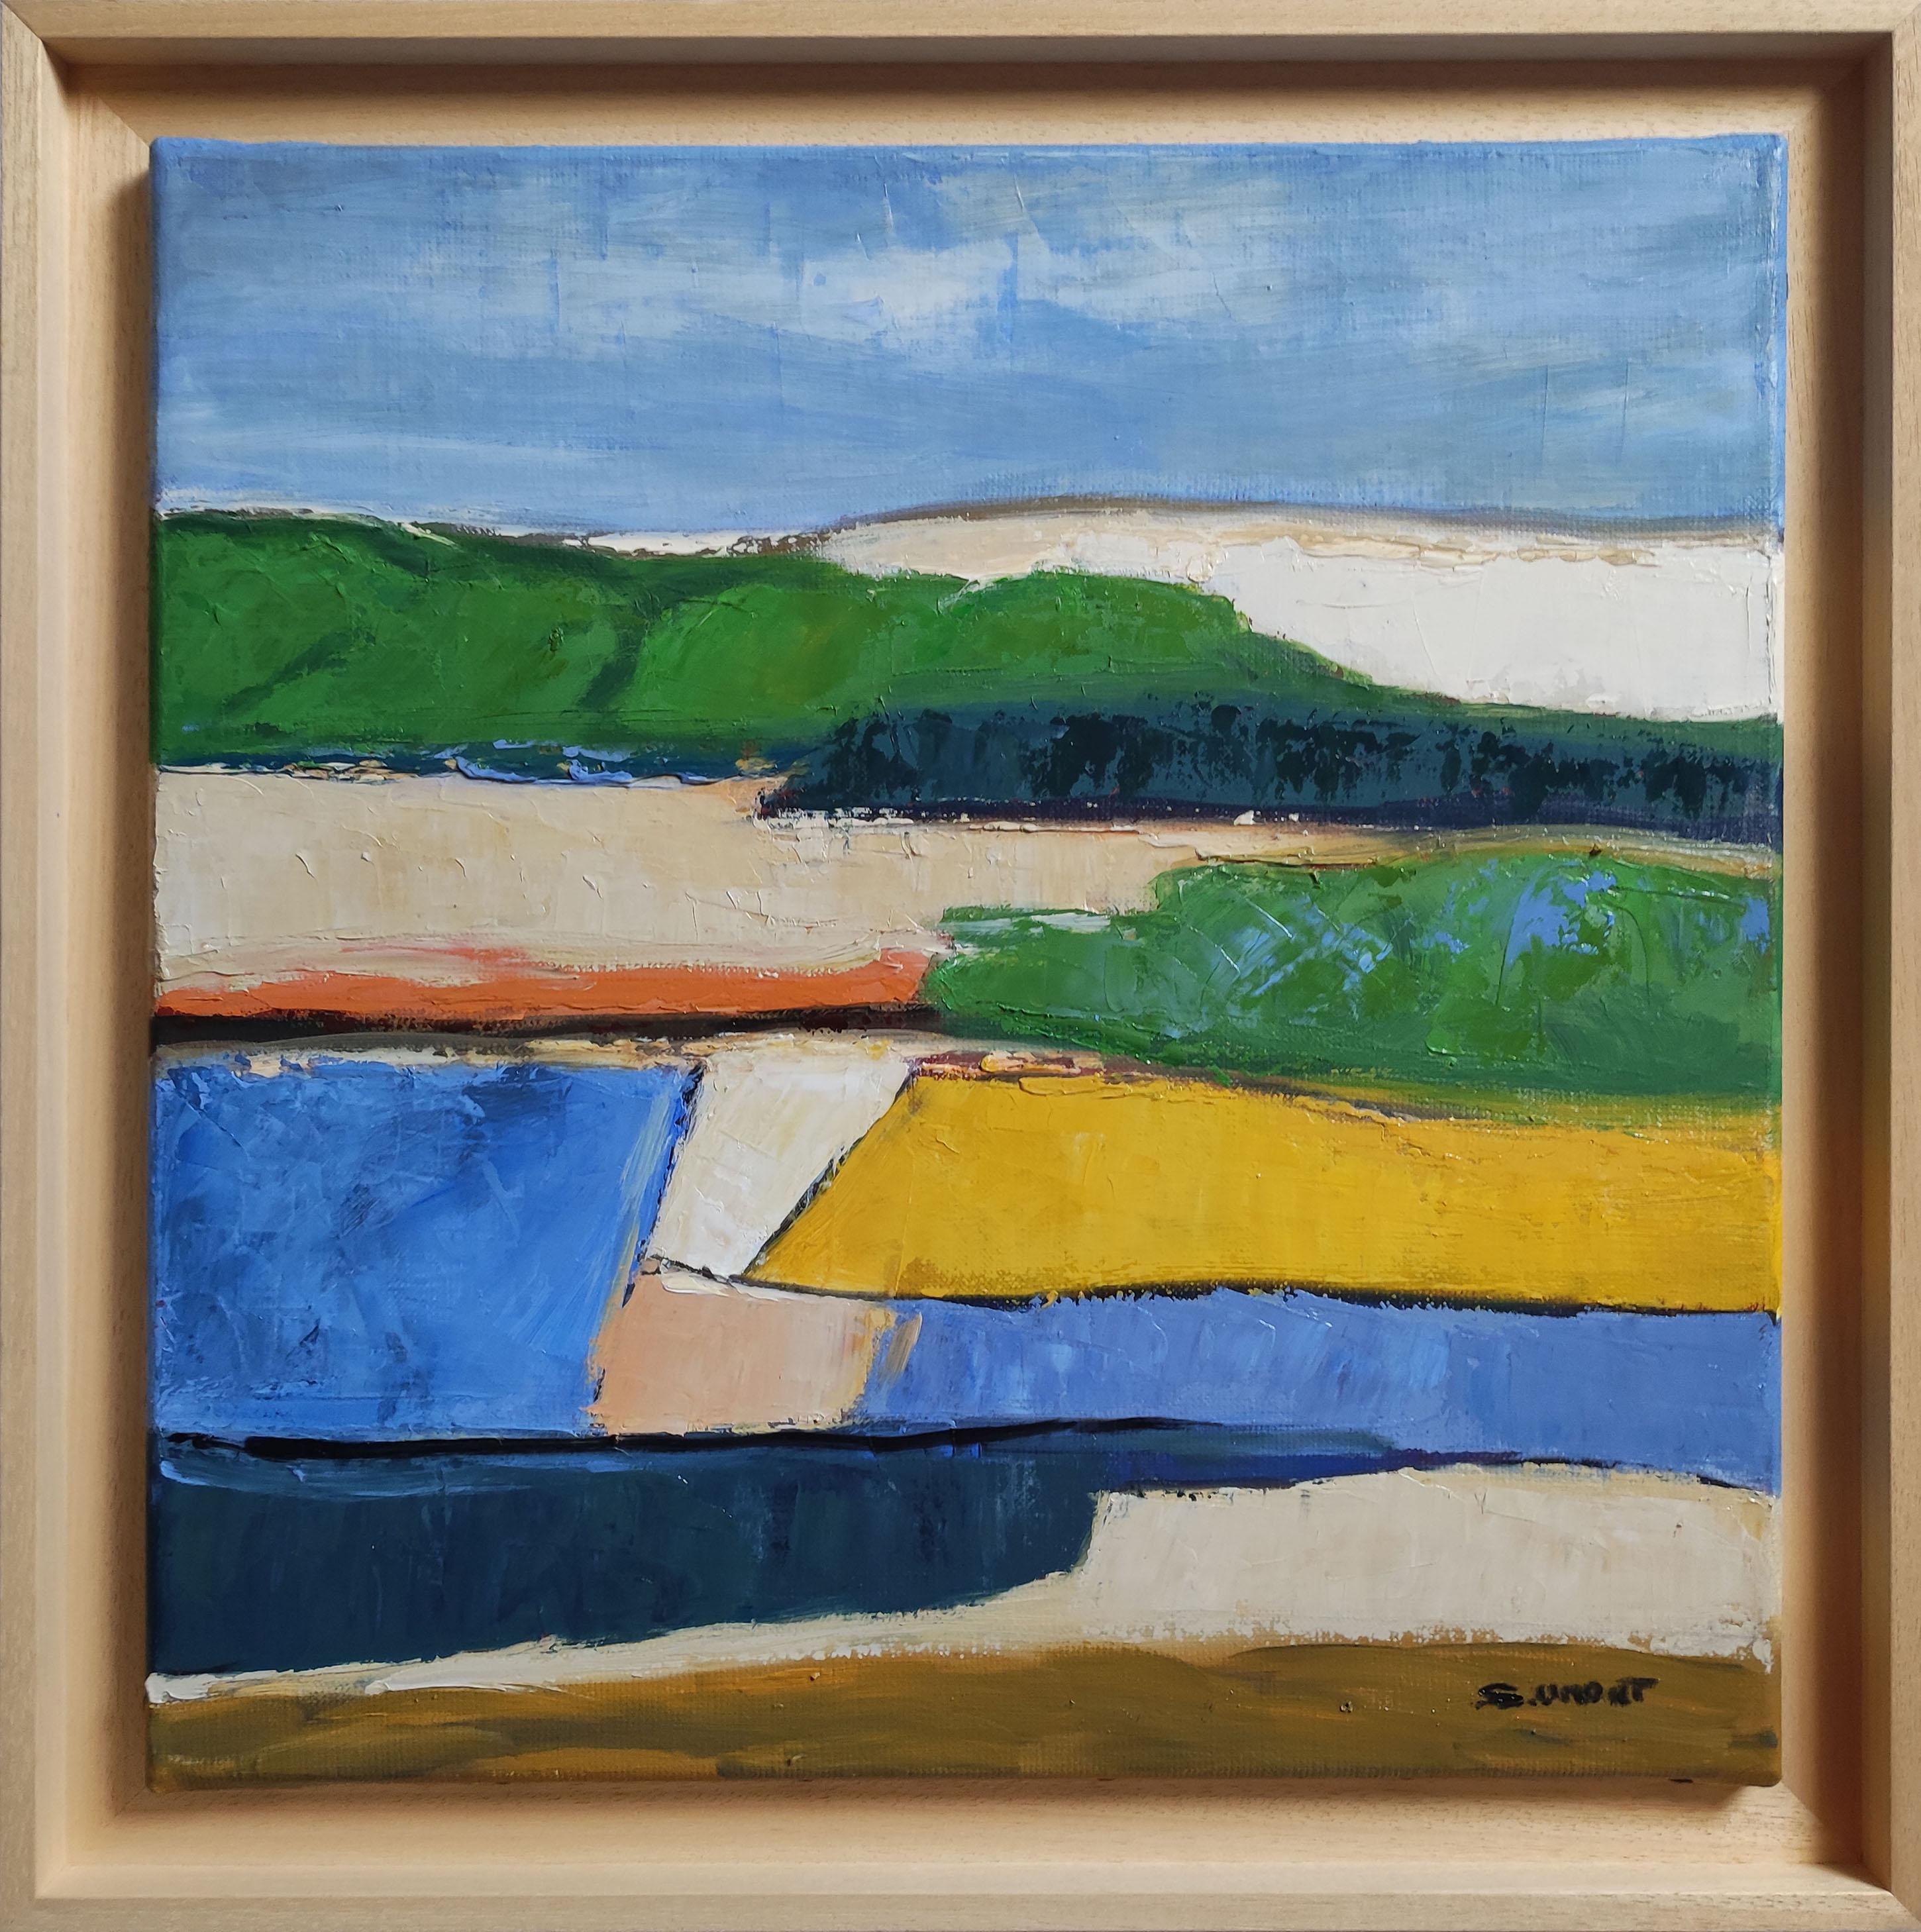 SOPHIE DUMONT Landscape Painting - champs colorés, abstract landscape, oil on canvas, expressionism, fields, France